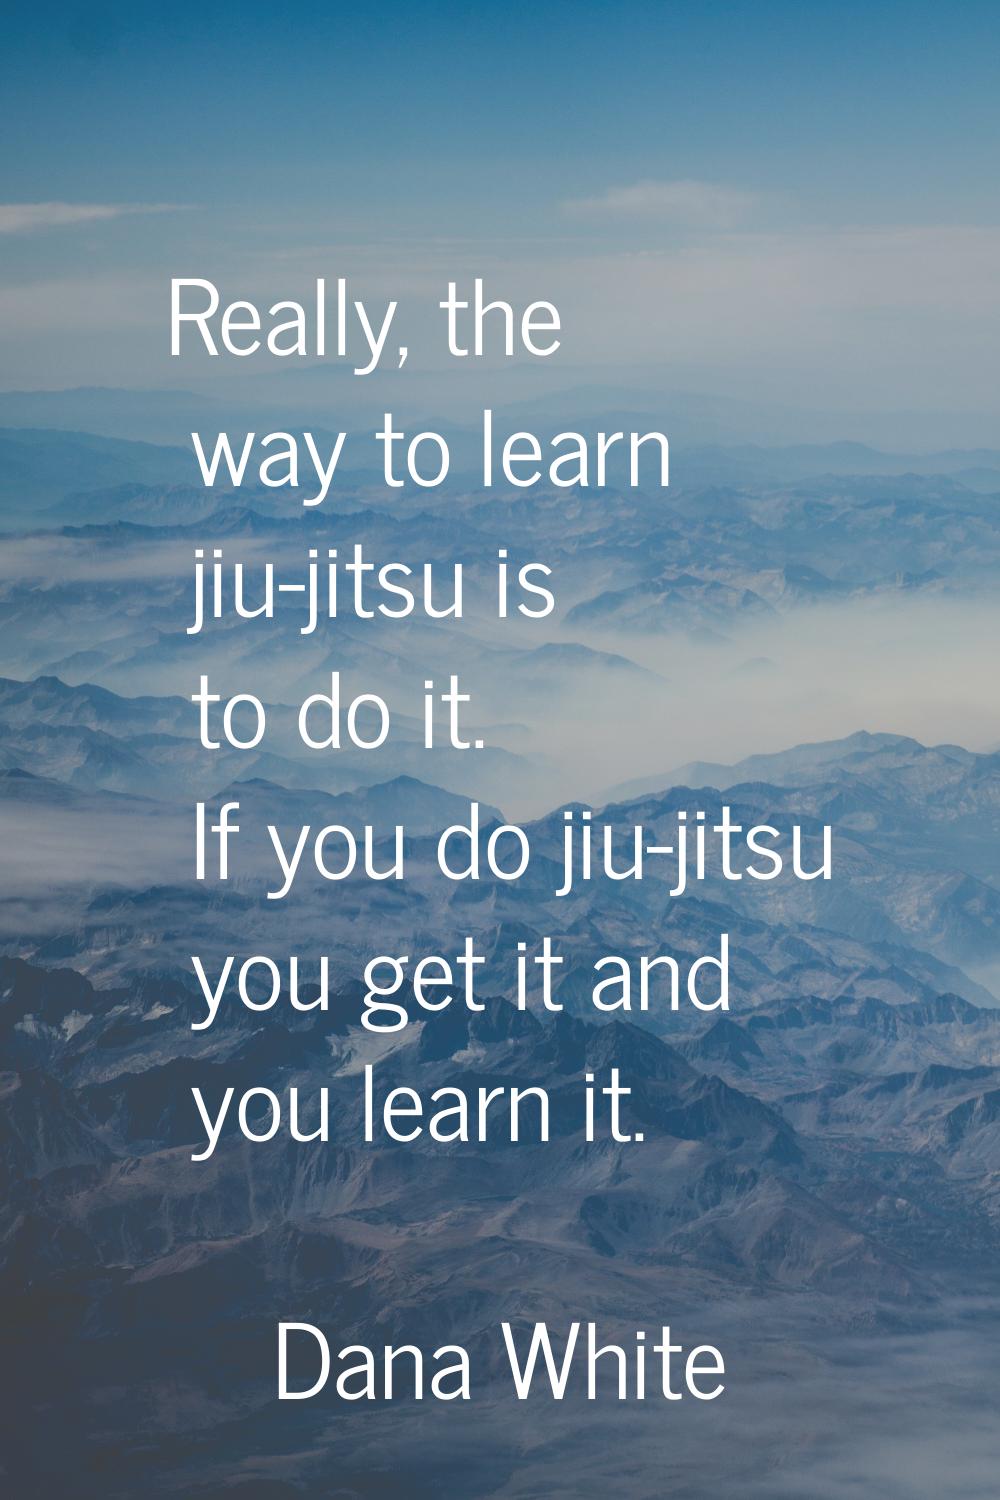 Really, the way to learn jiu-jitsu is to do it. If you do jiu-jitsu you get it and you learn it.